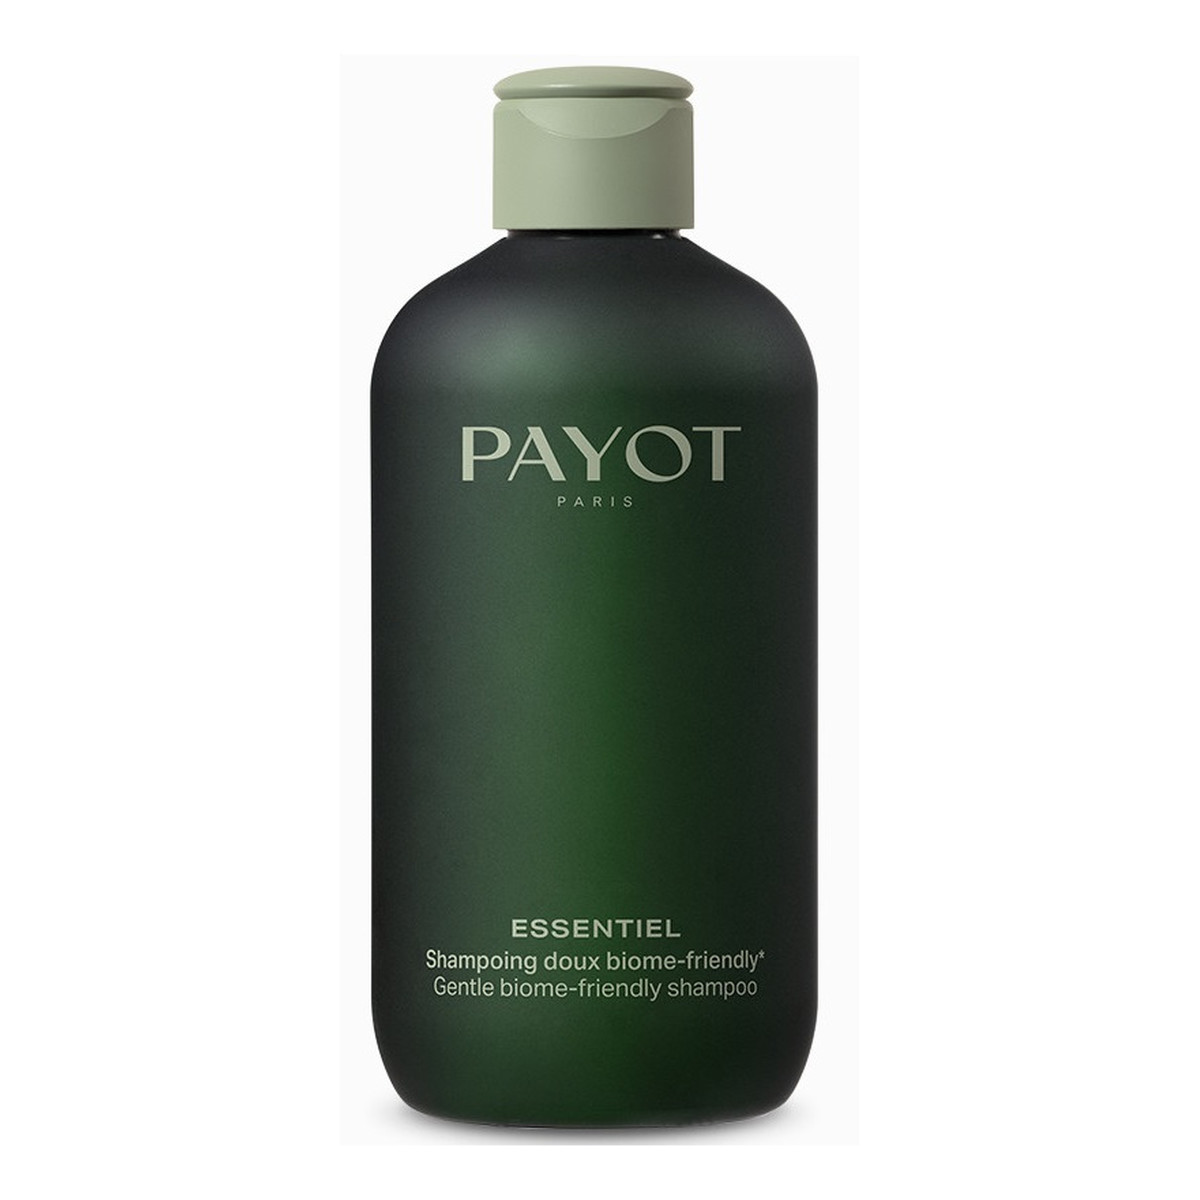 Payot Essentiel shampoing doux biome-friendly szampon do włosów 280ml